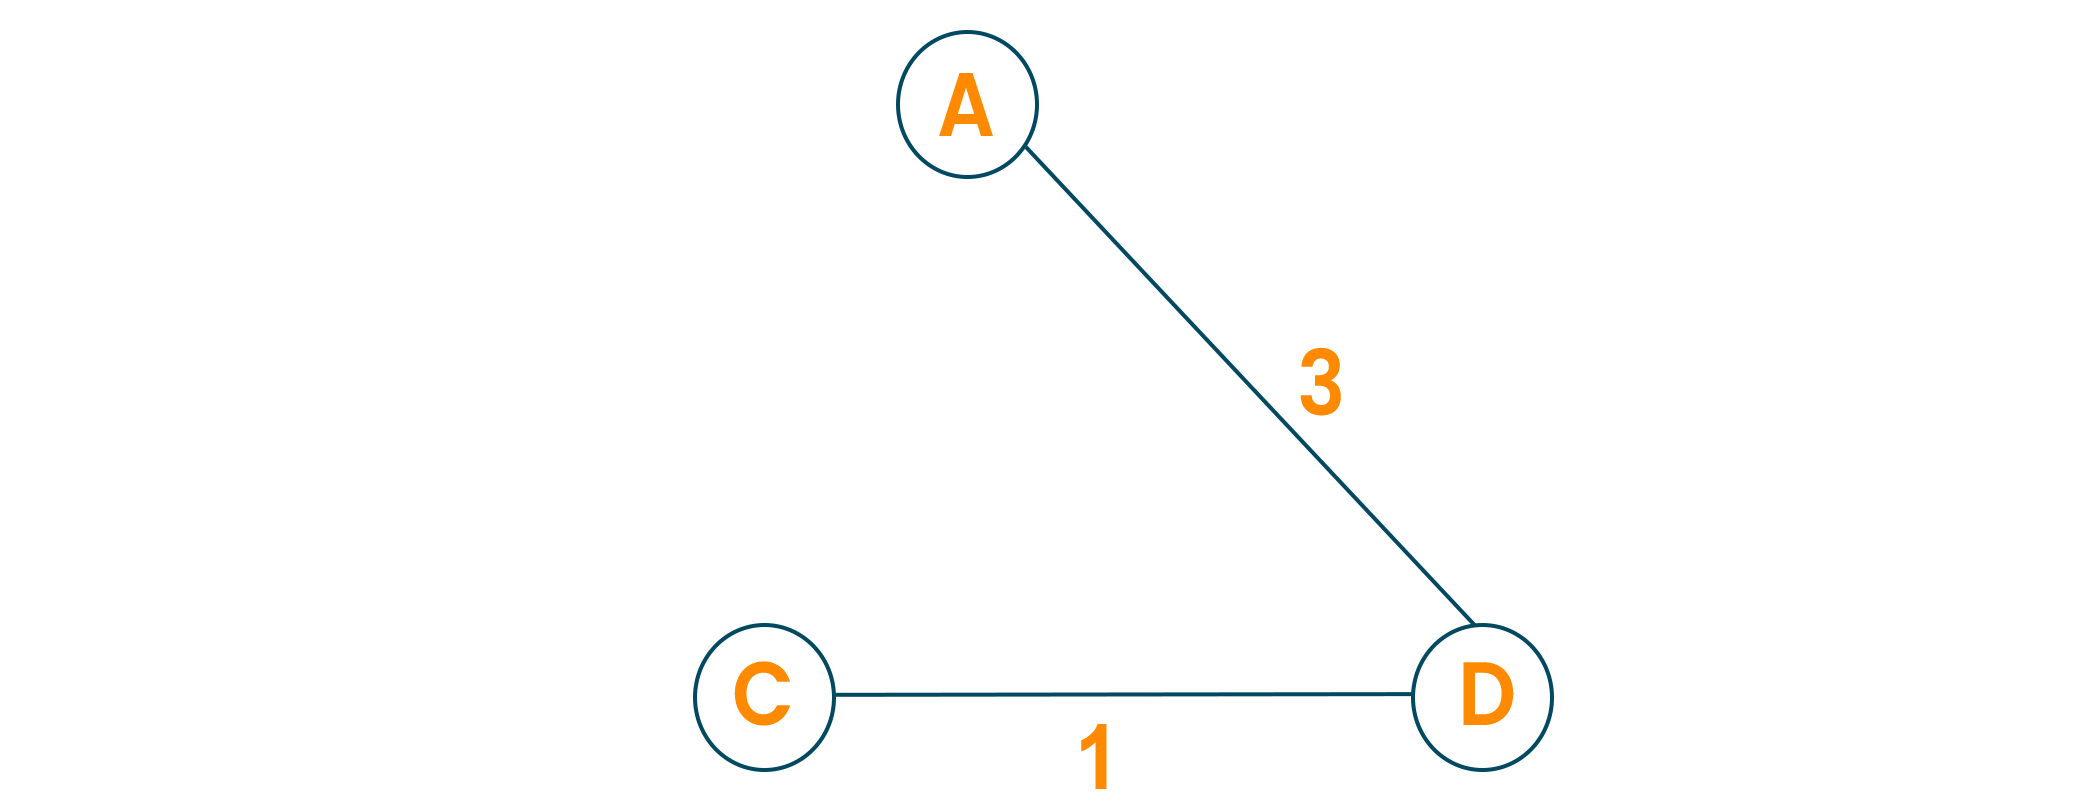 minimum spanning tree python